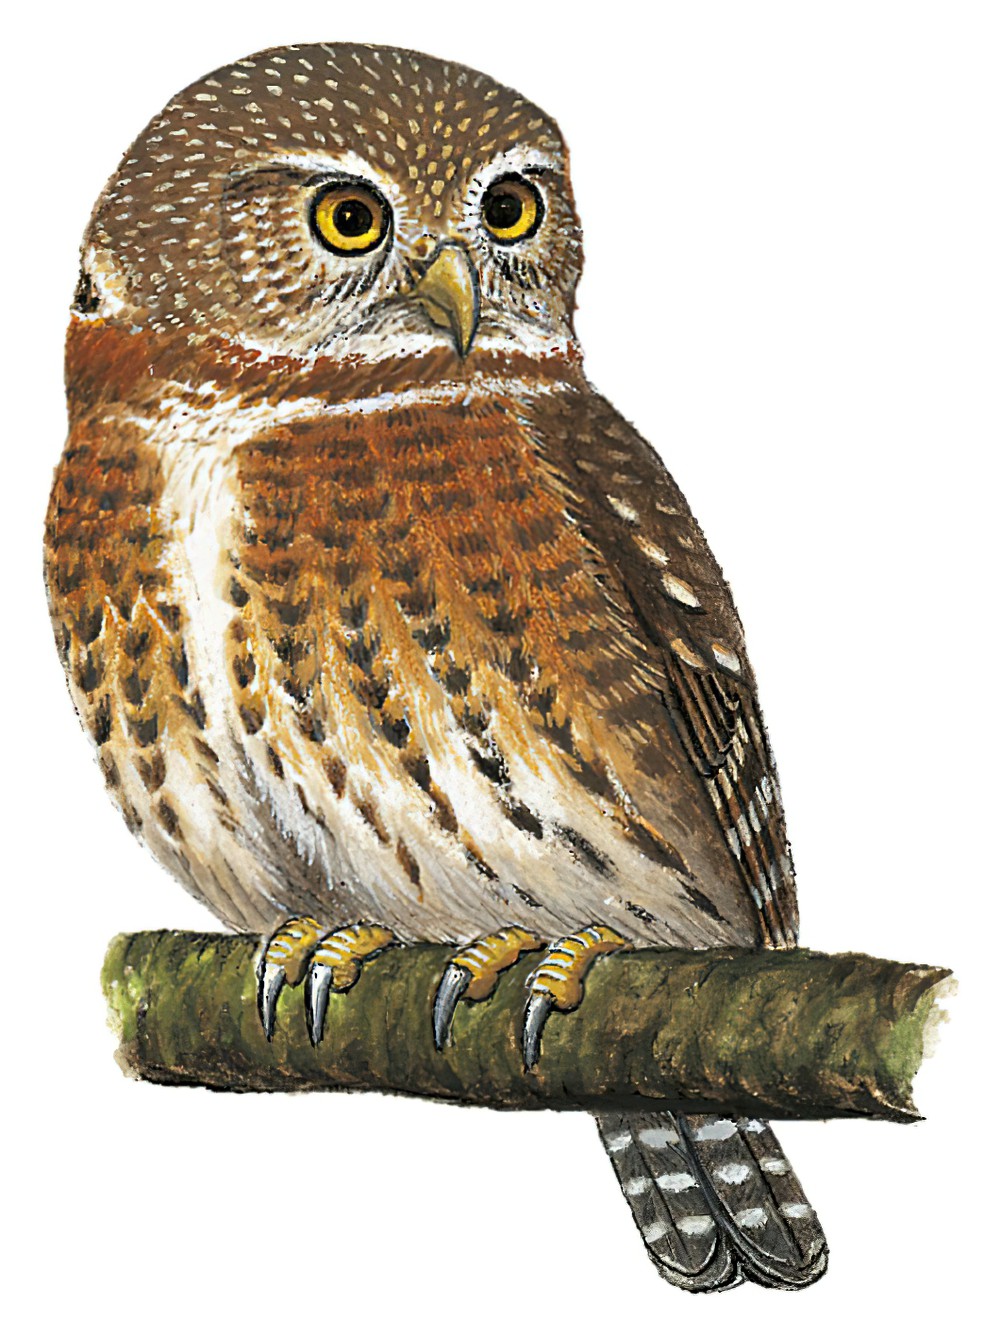 Cuban Pygmy-Owl / Glaucidium siju